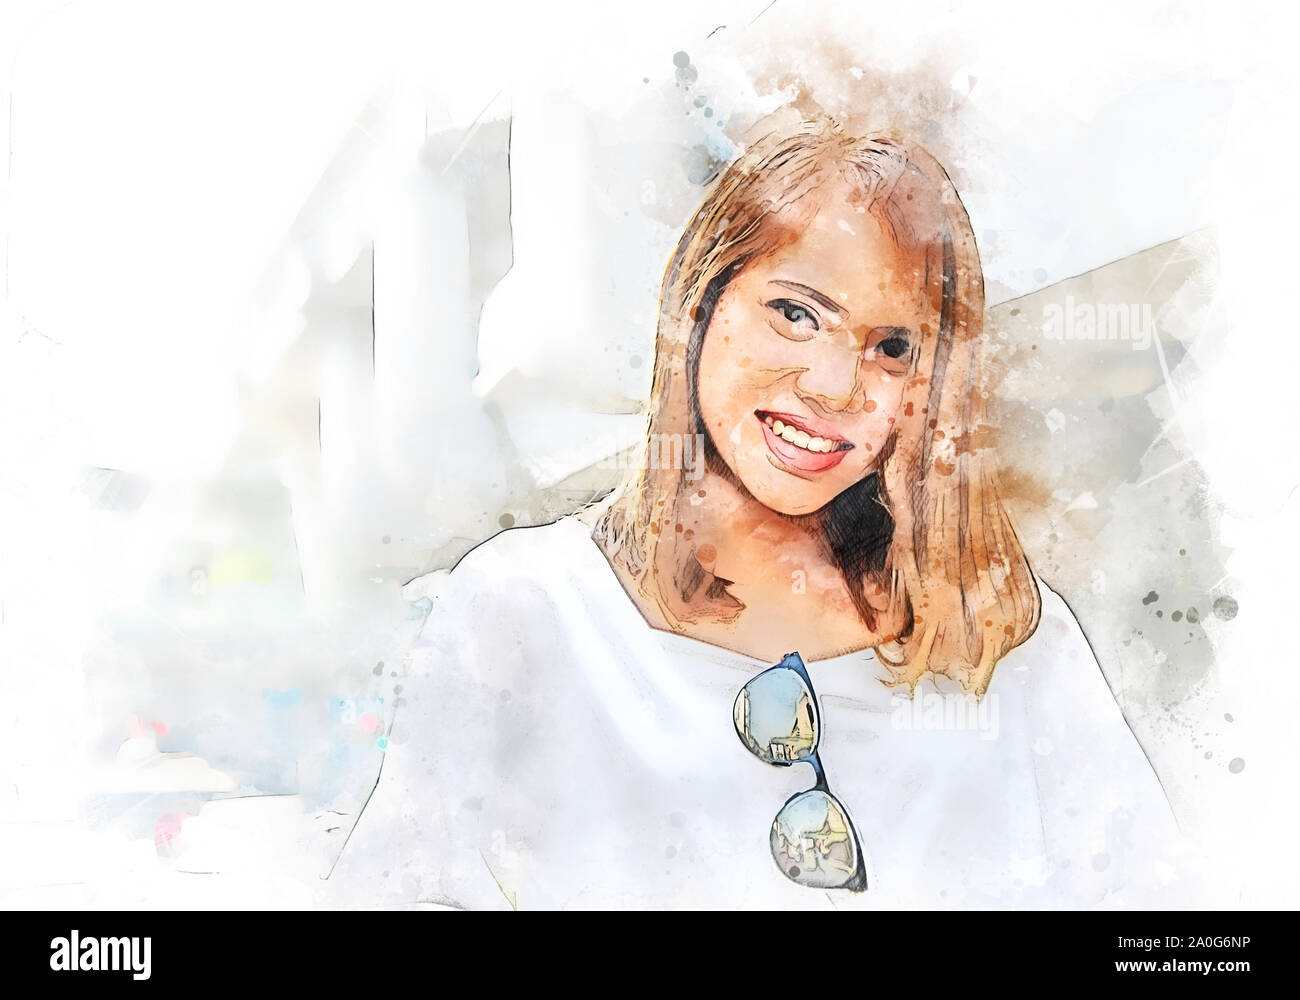 Abstrakte schöne Frau lächeln Portrait reisen und Walking Street in der Innenstadt am Aquarell illustration Malerei Hintergrund. Stockfoto